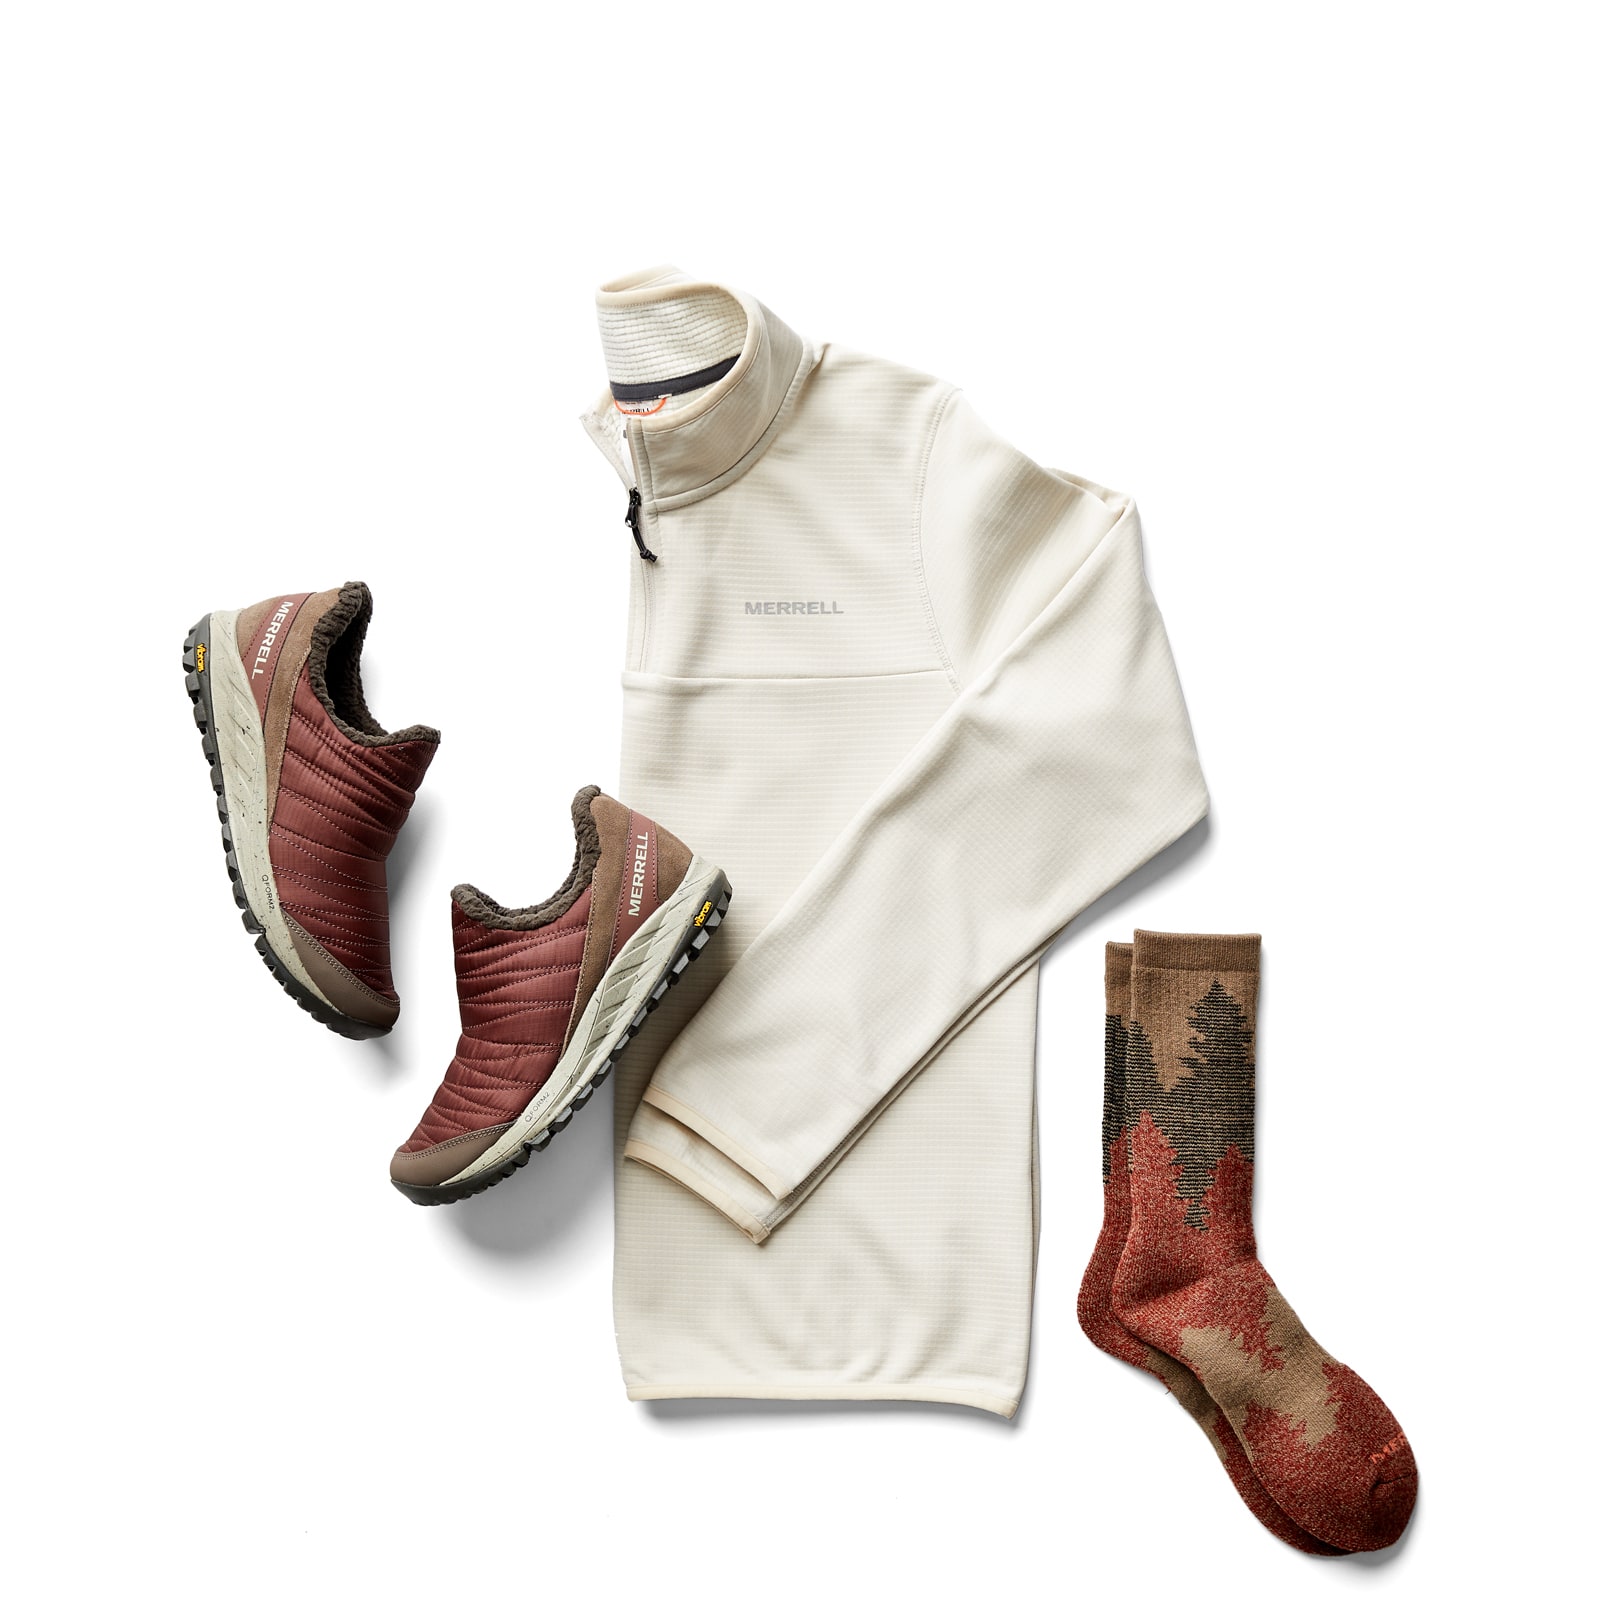 Merrell sneaker moc, pullover, and socks.